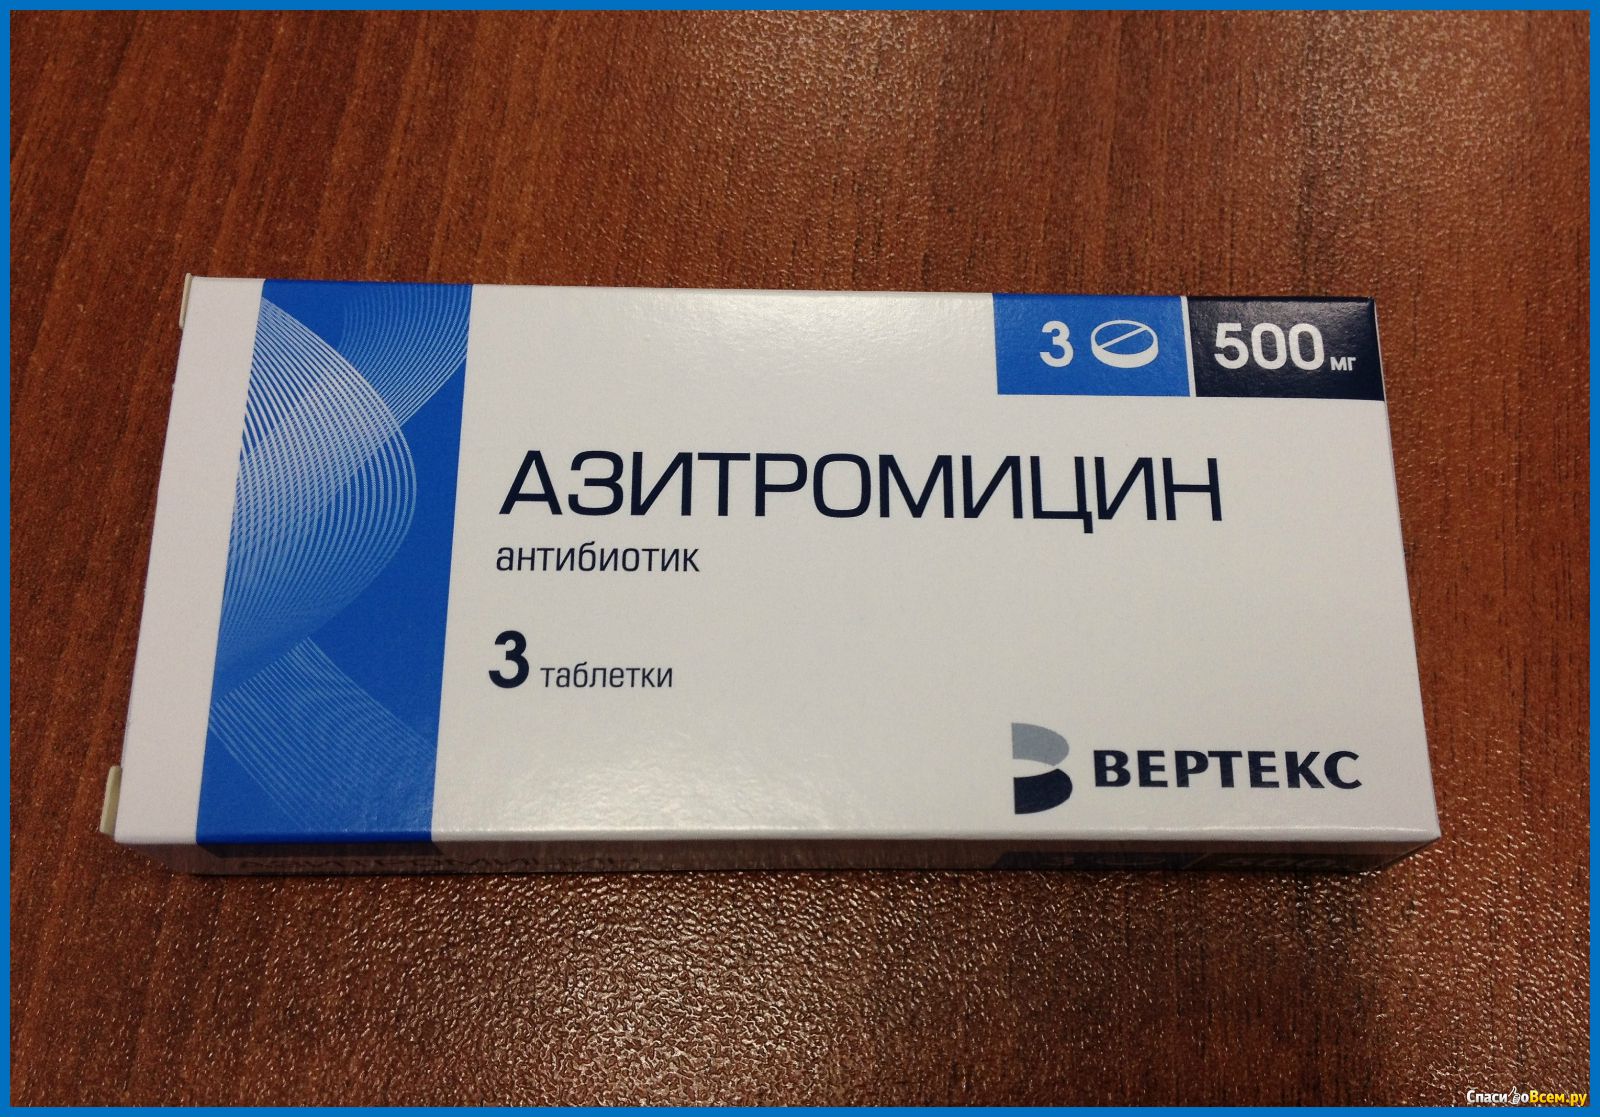 Можно принимать антибиотики азитромицин. Антибиотик Азитромицин 3 таблетки. Азитромицин 500 мг. Антибиотик Азитромицин 500 мг. Азитромицин 500 мг 3 таблетки.